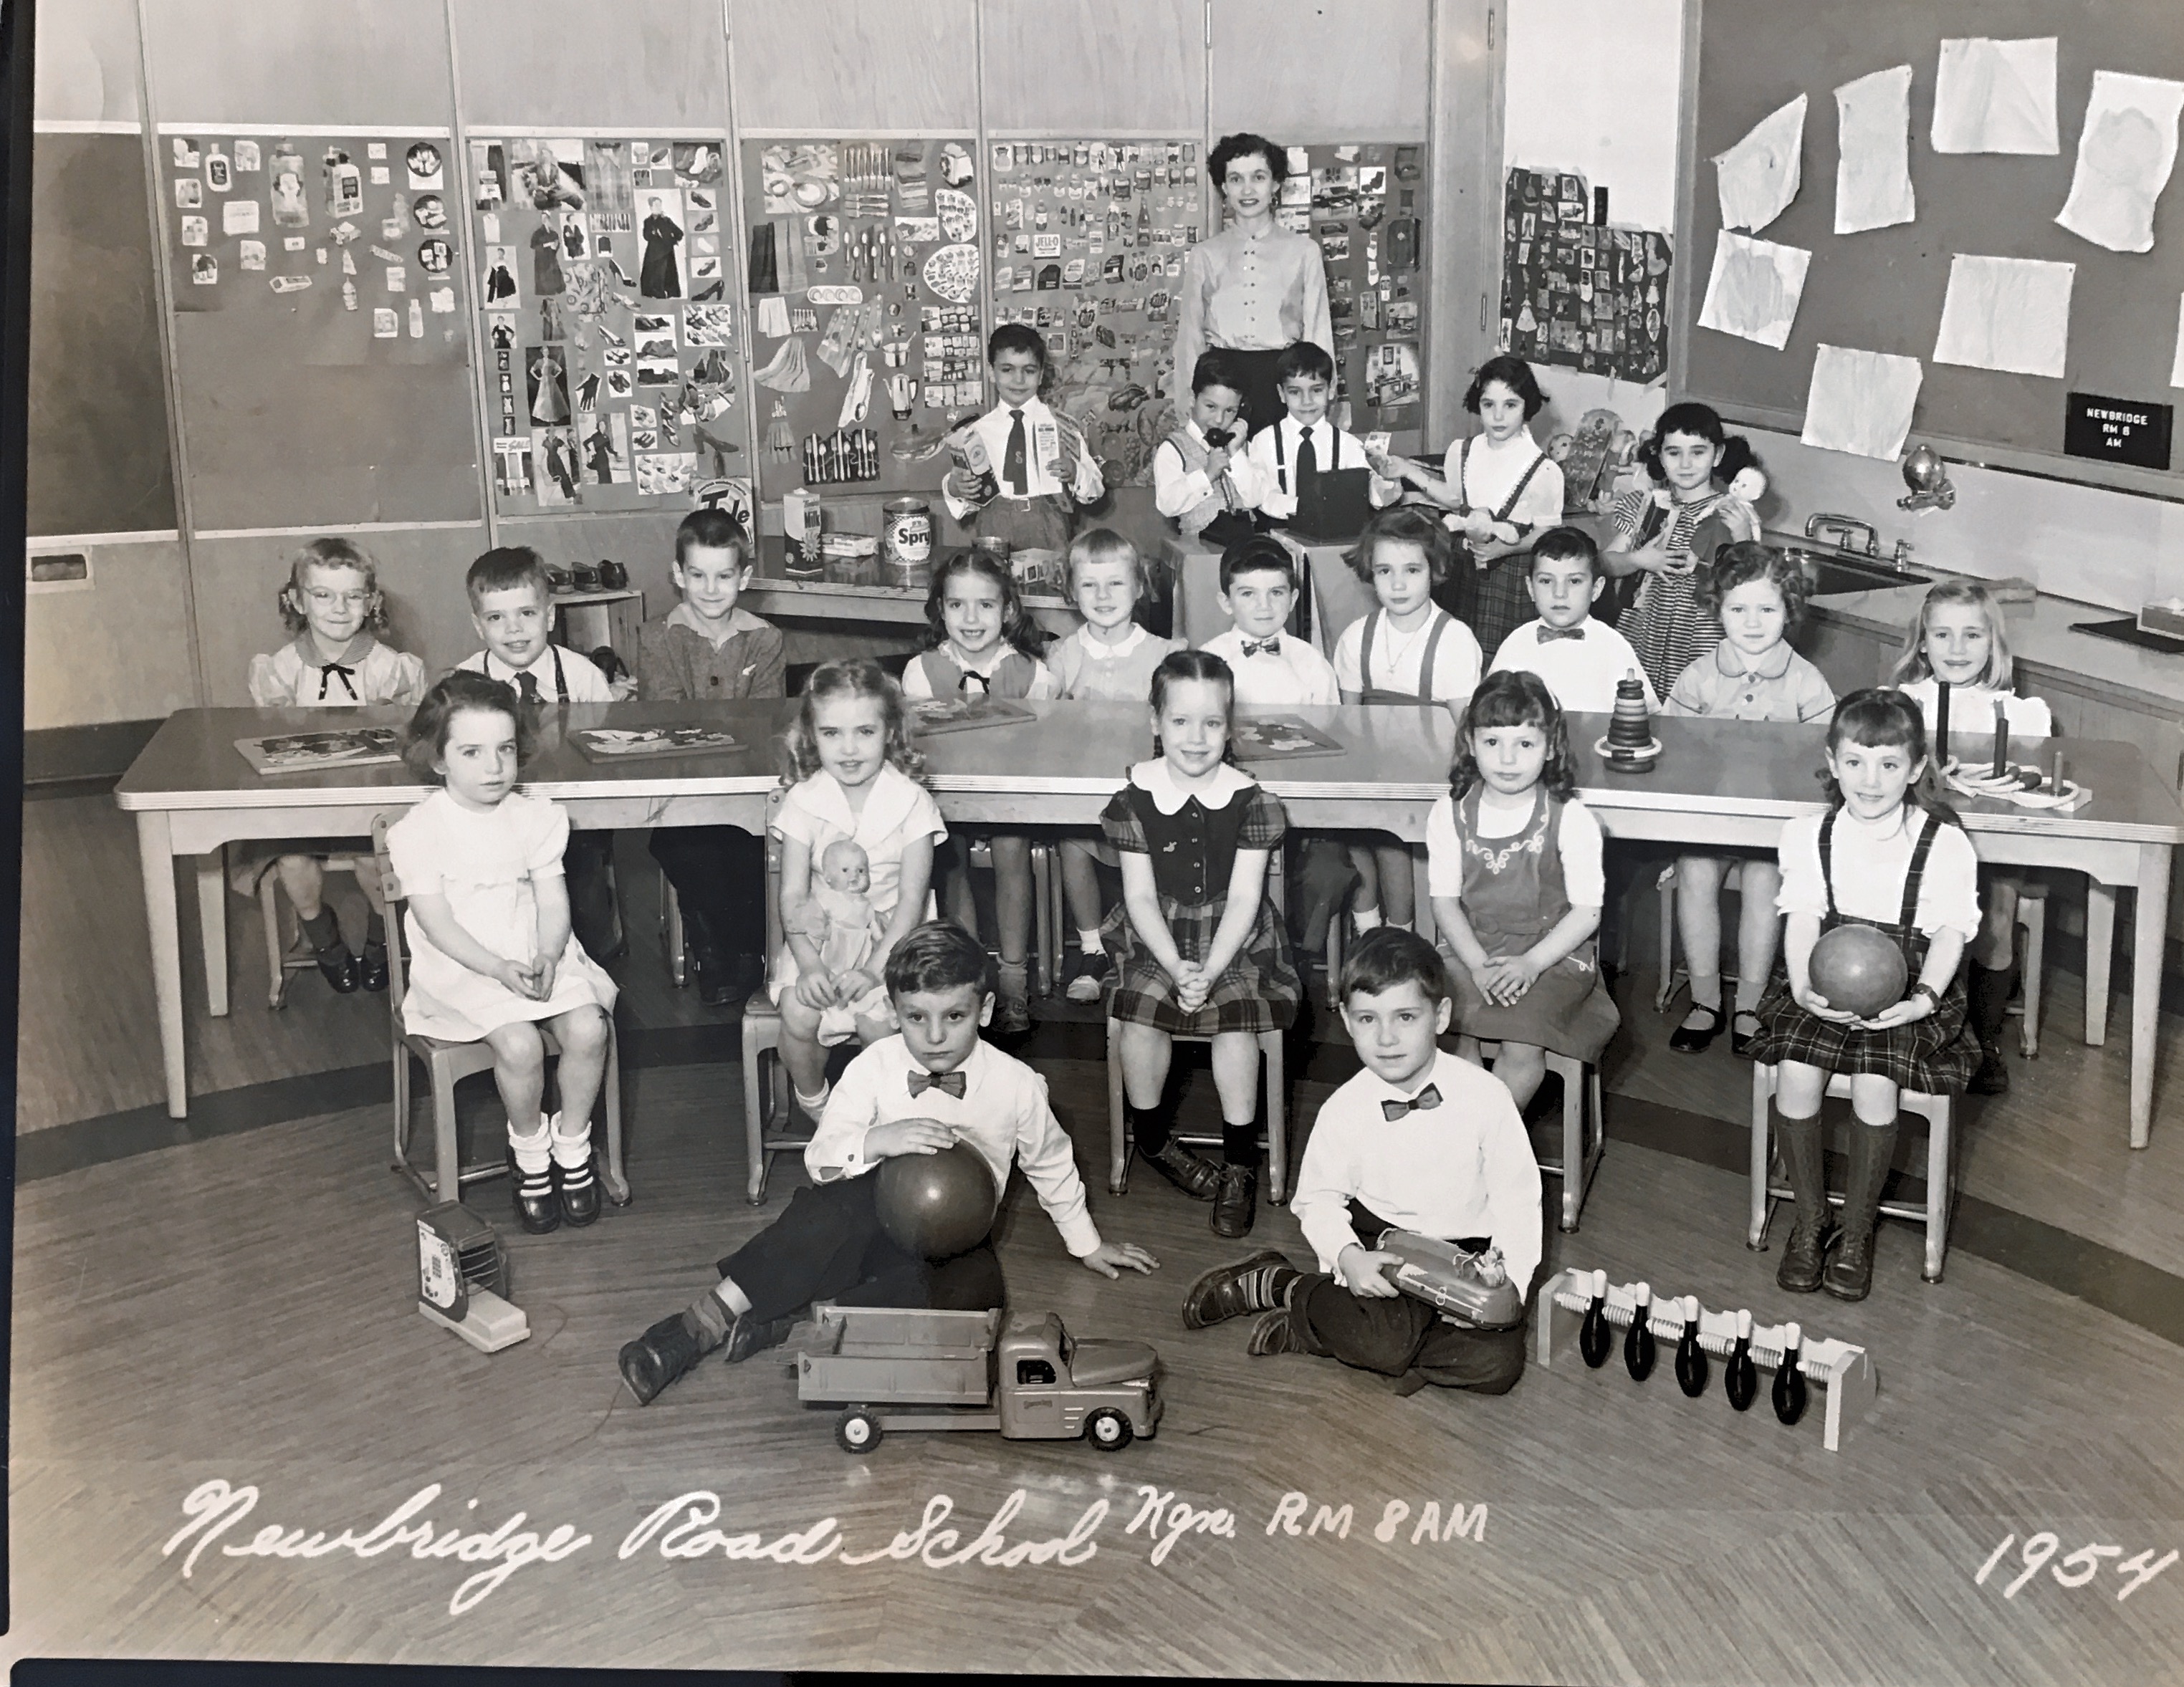 Kindergarten 1953-1954
Miss Hutchison